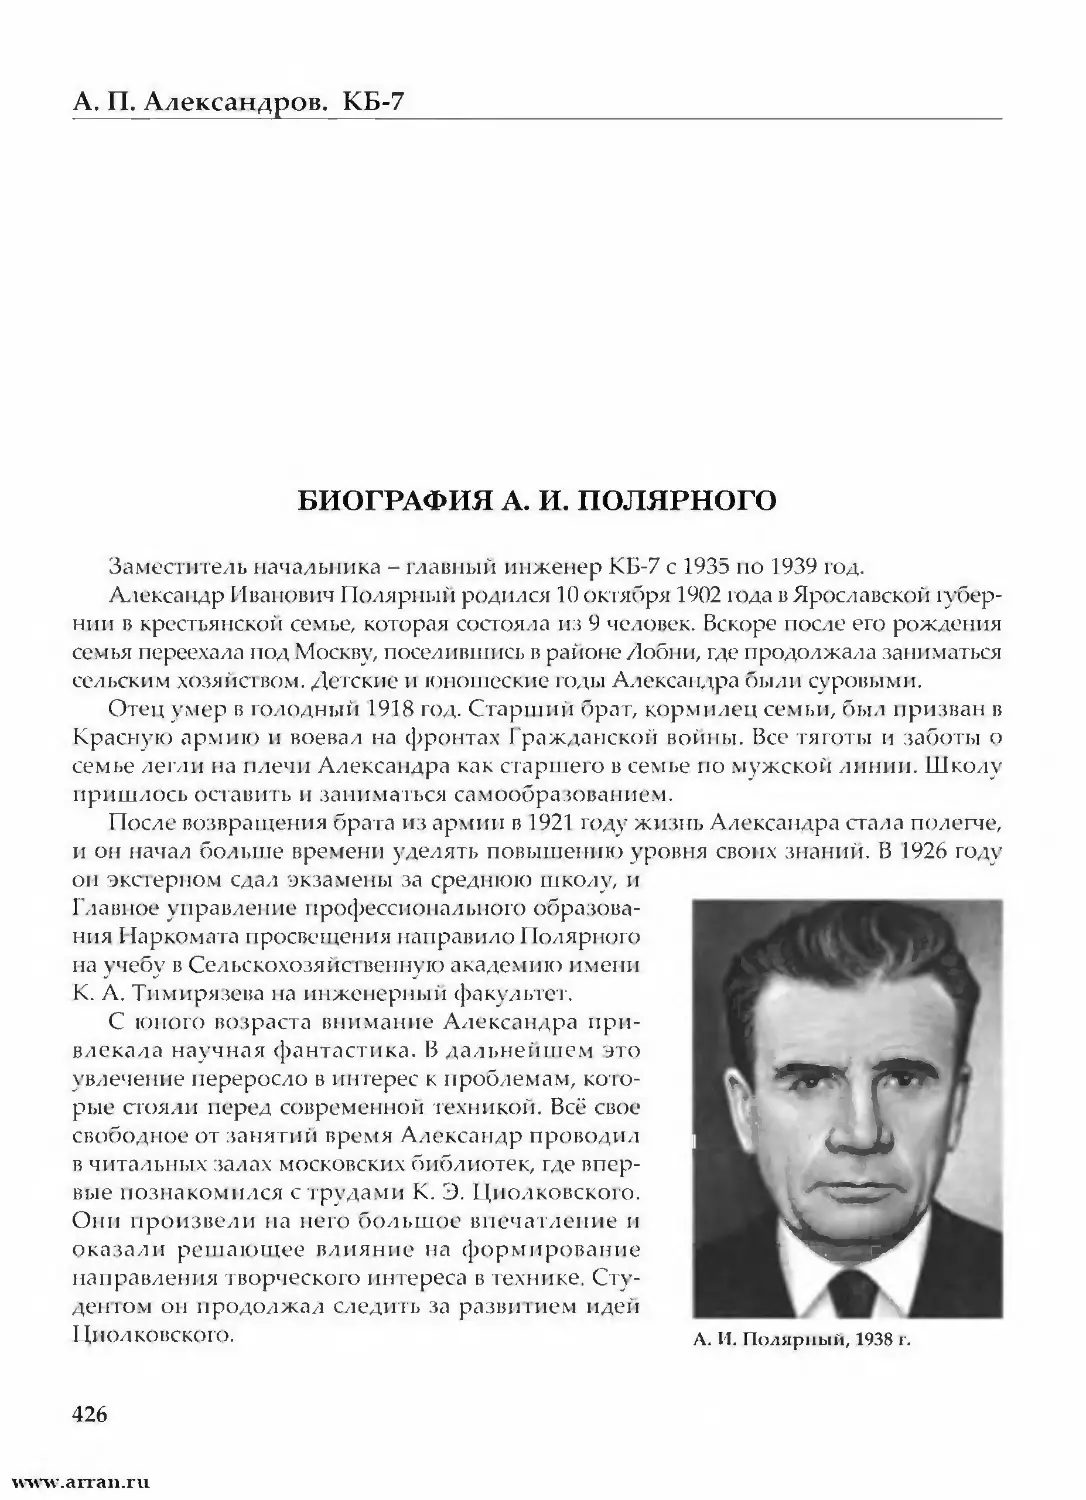 Биография А. И. Полярного